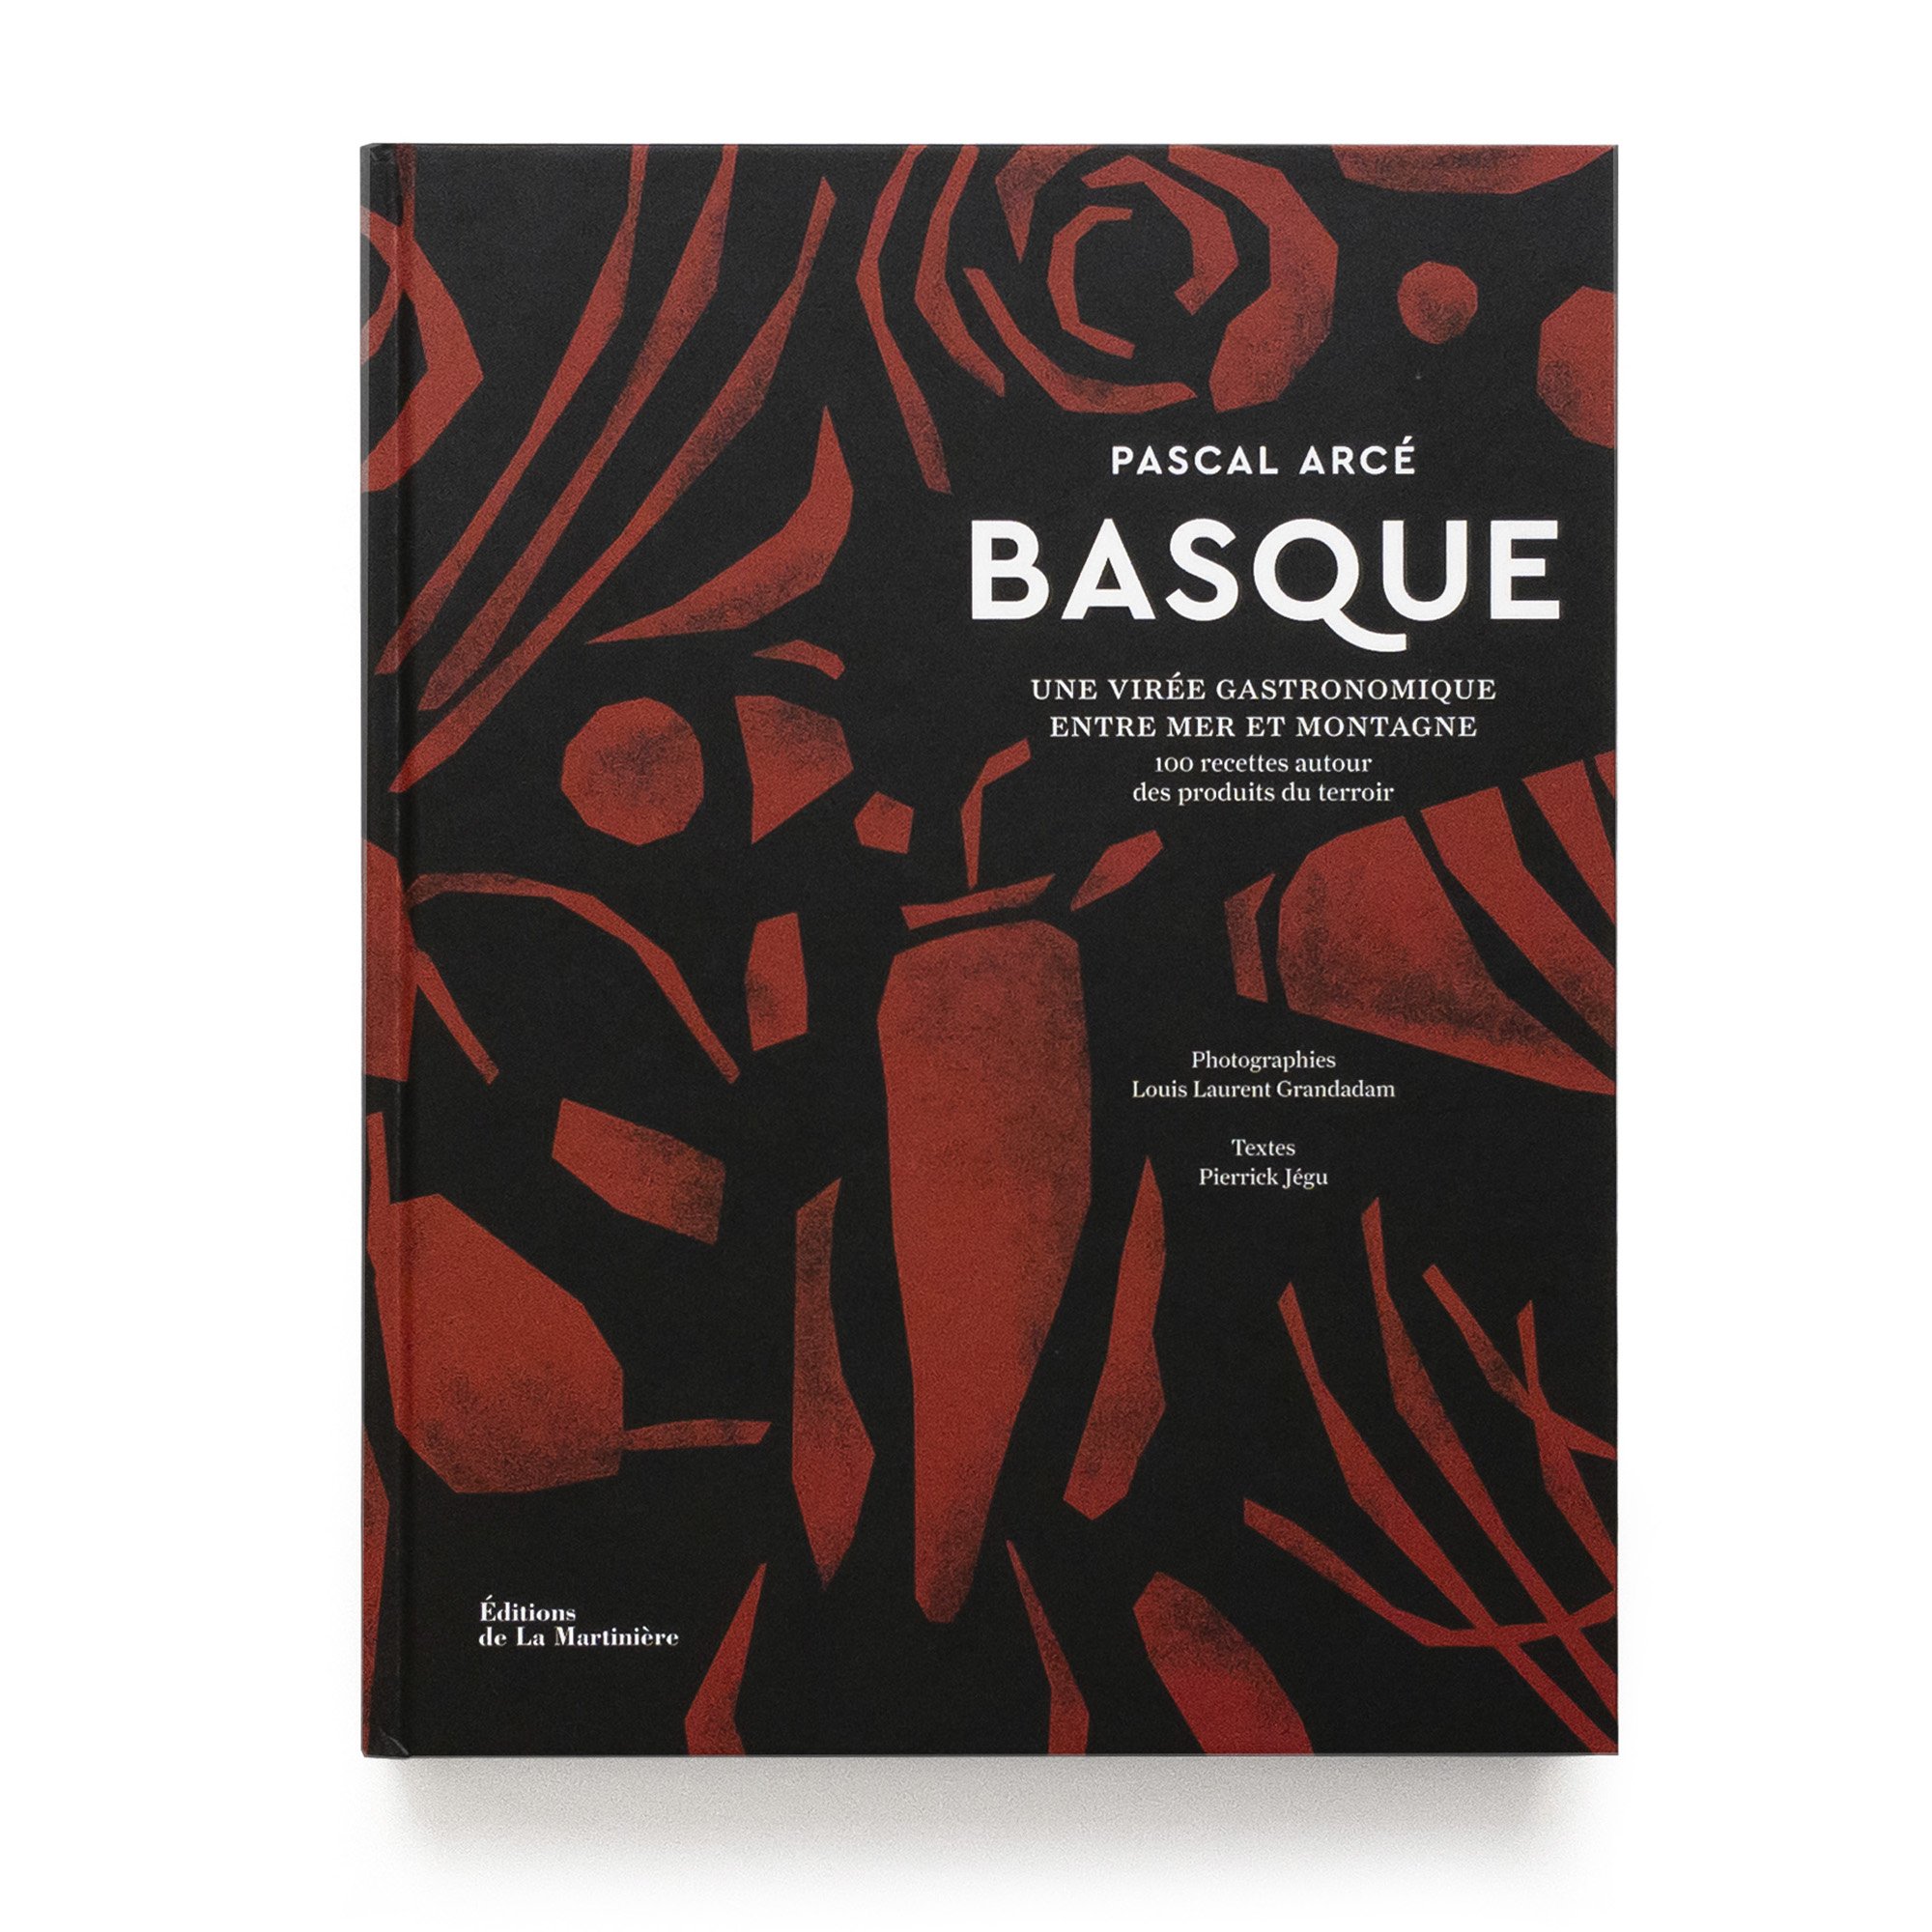   Basque  Une virée gastronomique entre mer et montagne Pascal Arcé  Éditions de La Martinière 384 pages 